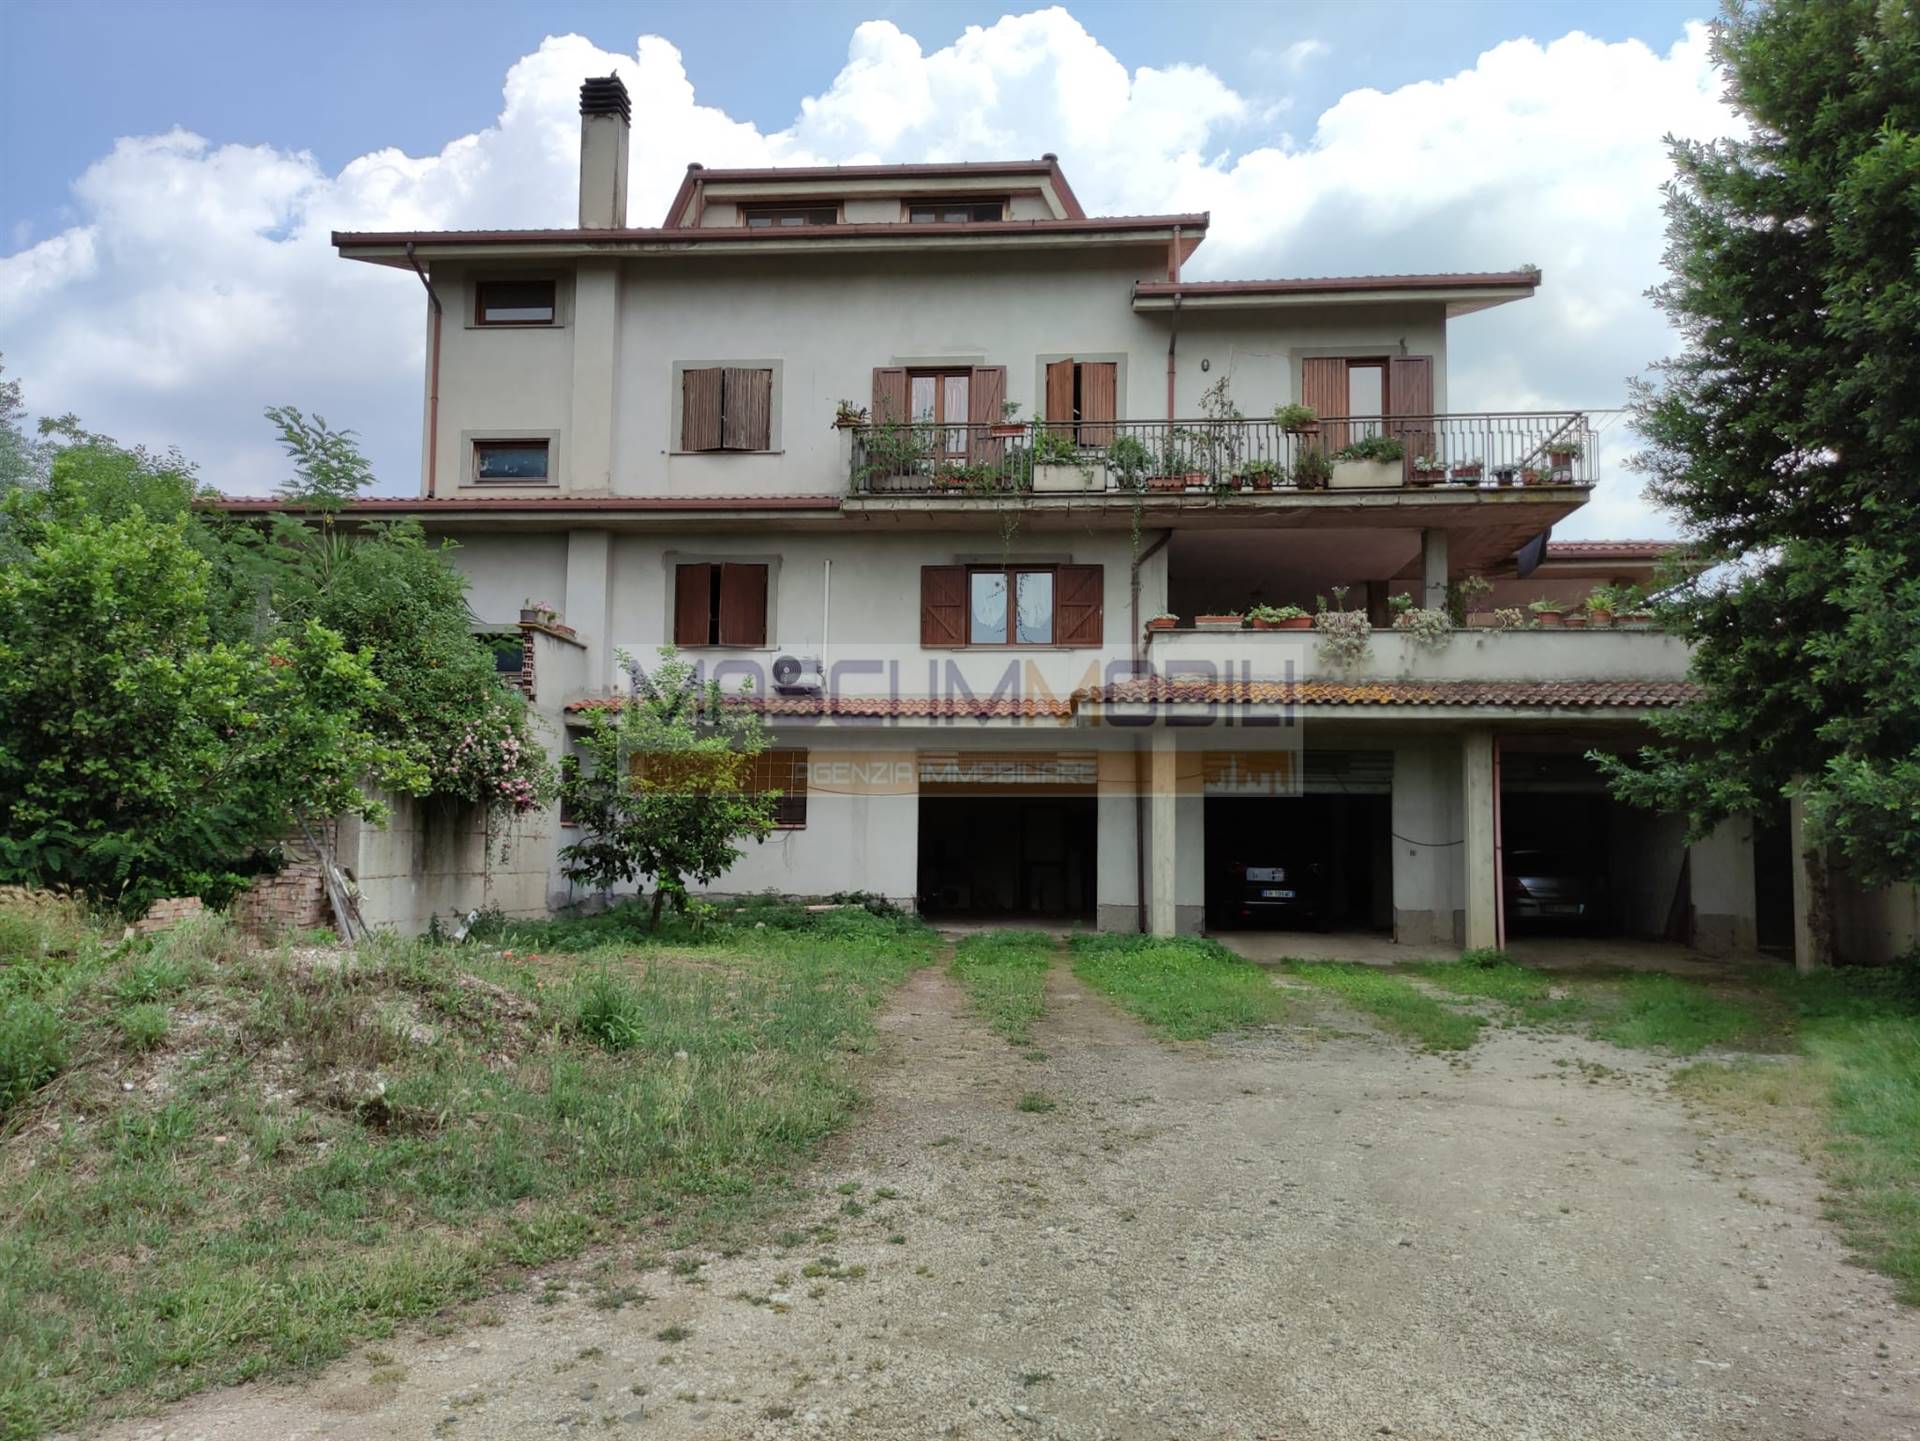 Villa in vendita a Monterotondo, 7 locali, zona Località: SAN MARTINELLO, prezzo € 420.000 | CambioCasa.it